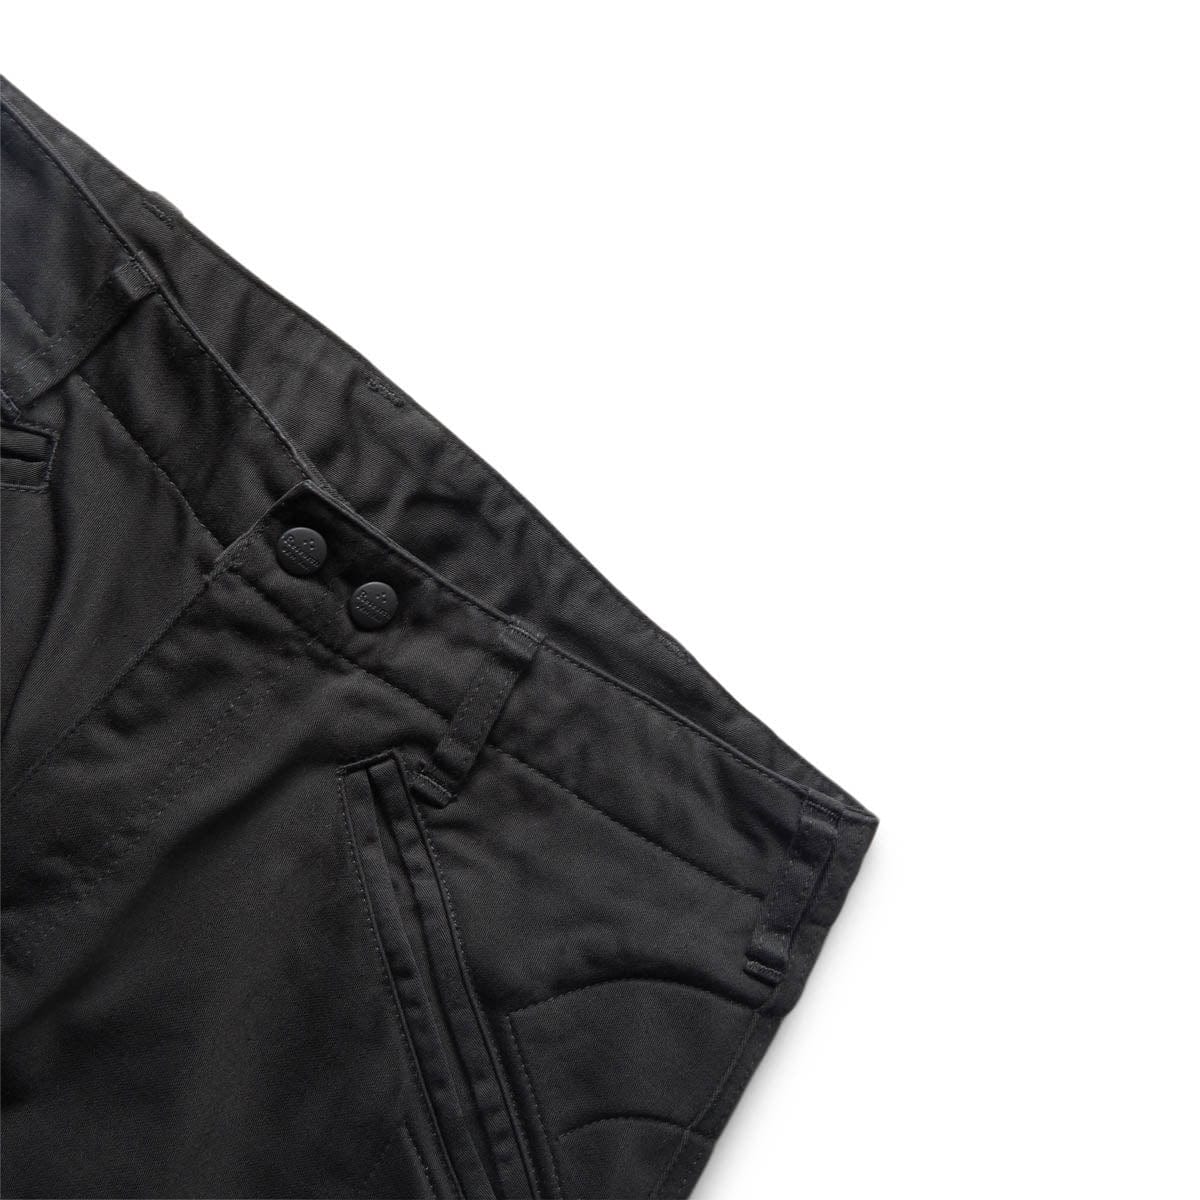 MALCOLM PANTS BLACK | Bodega